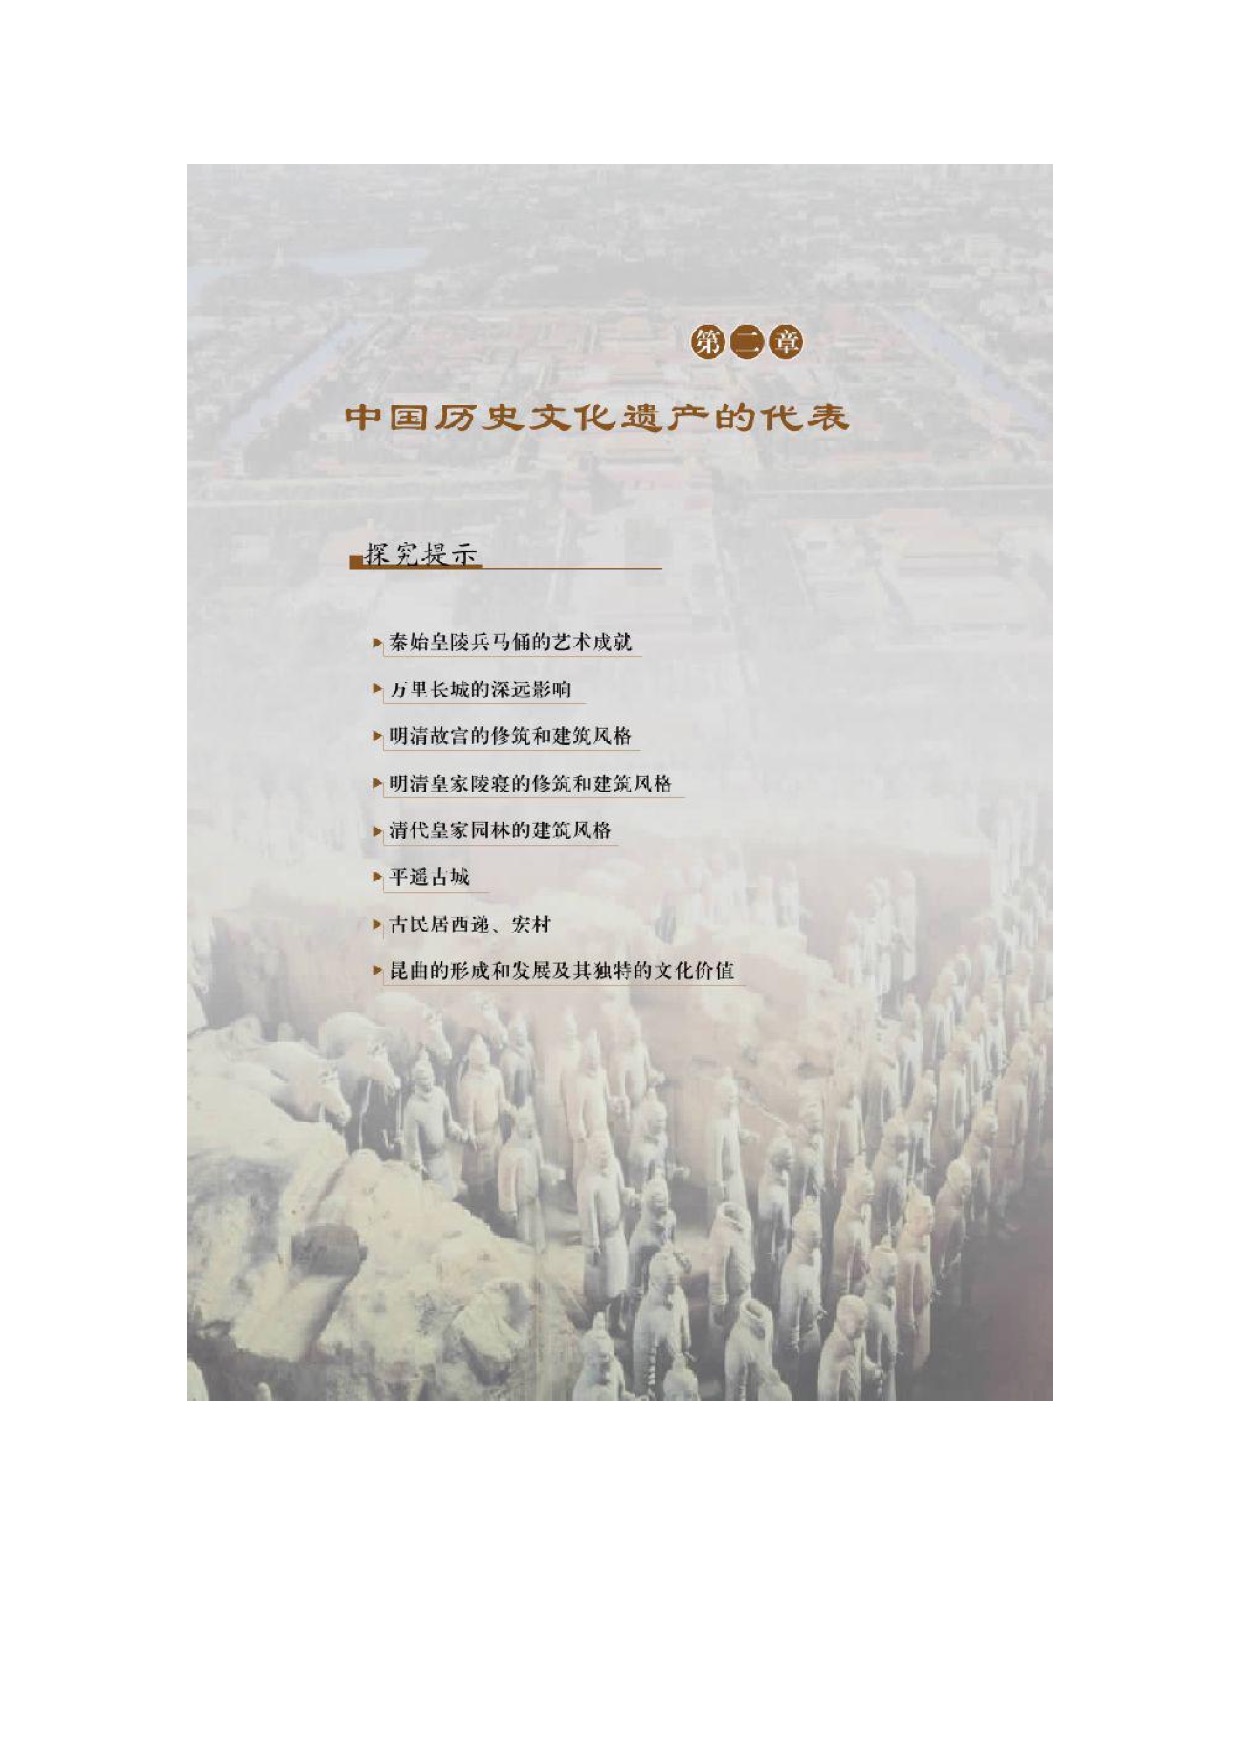 第二章中国历史文化遗产的代表